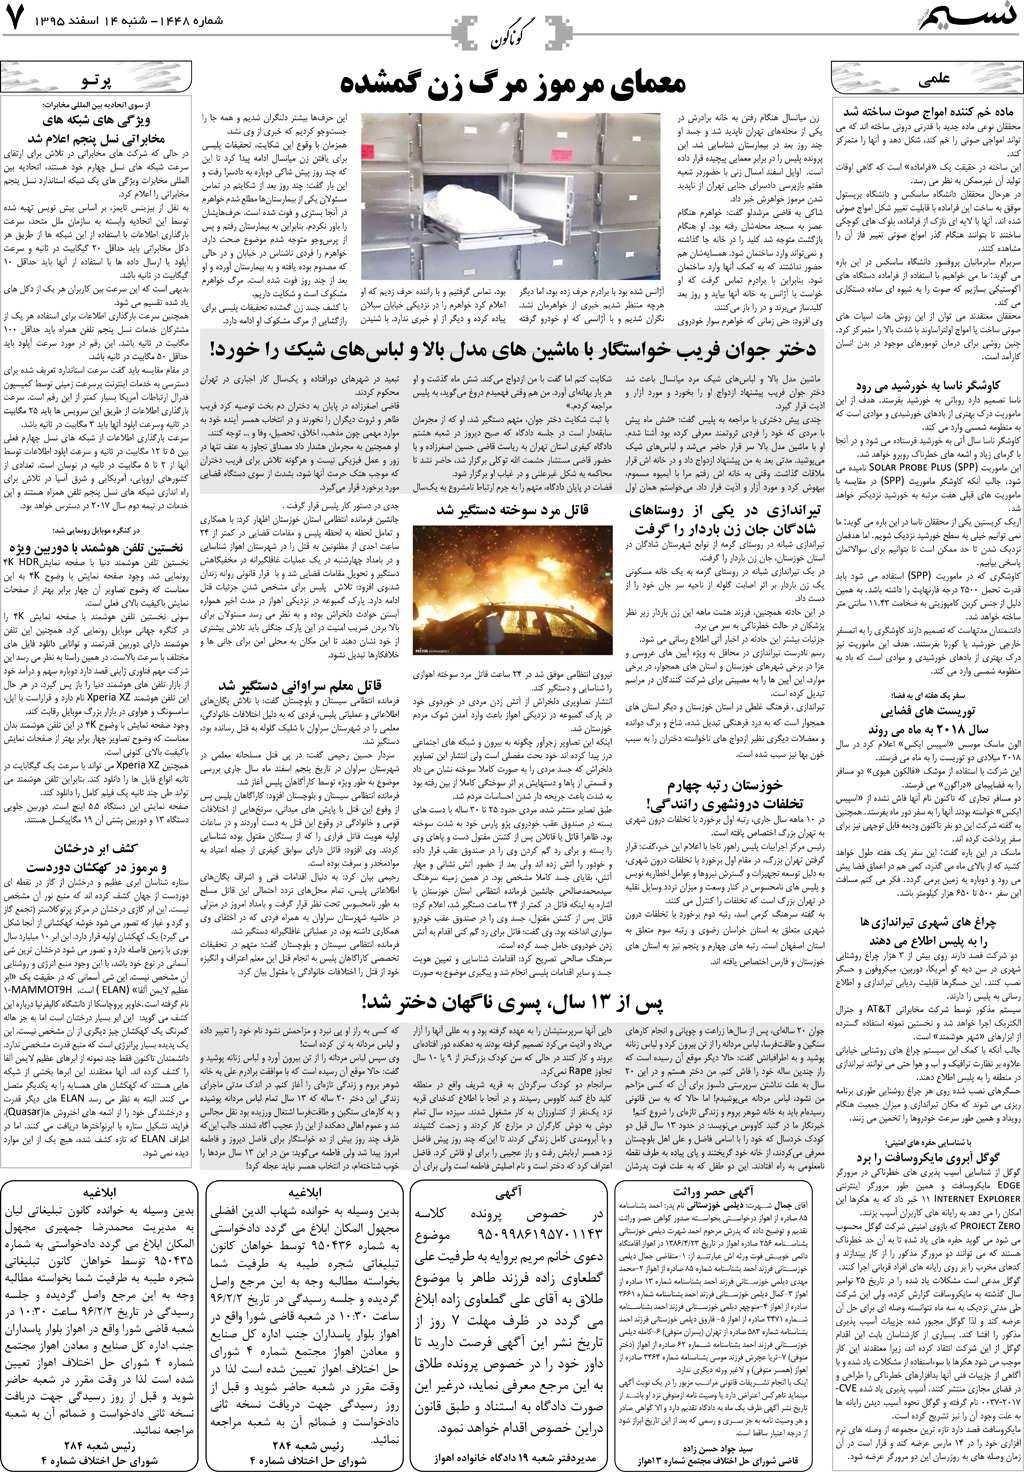 صفحه گوناگون روزنامه نسیم شماره 1448